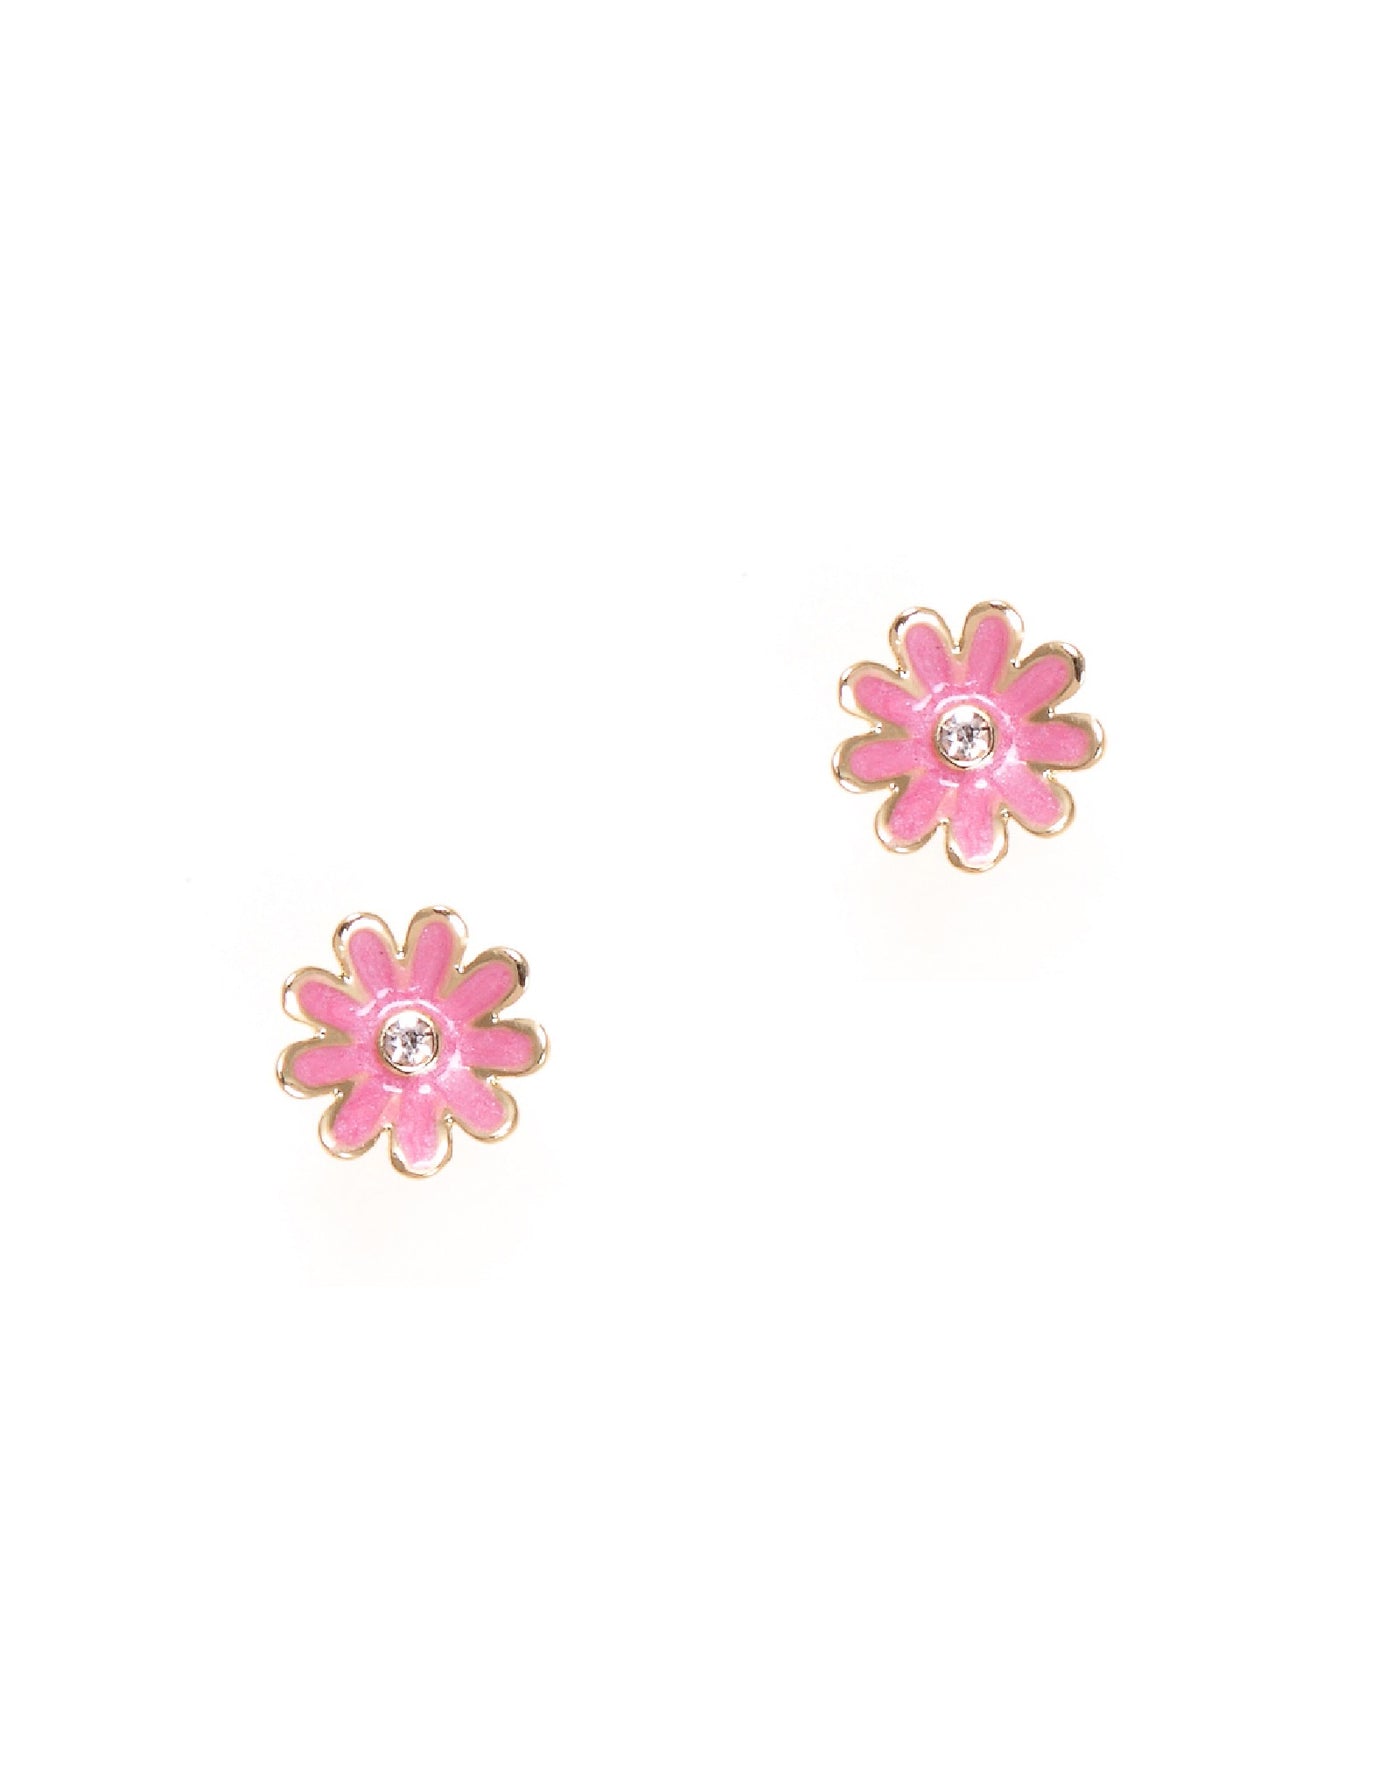 Enamel Earrings (2 Pack) - Pink Daisy - Girl Nation